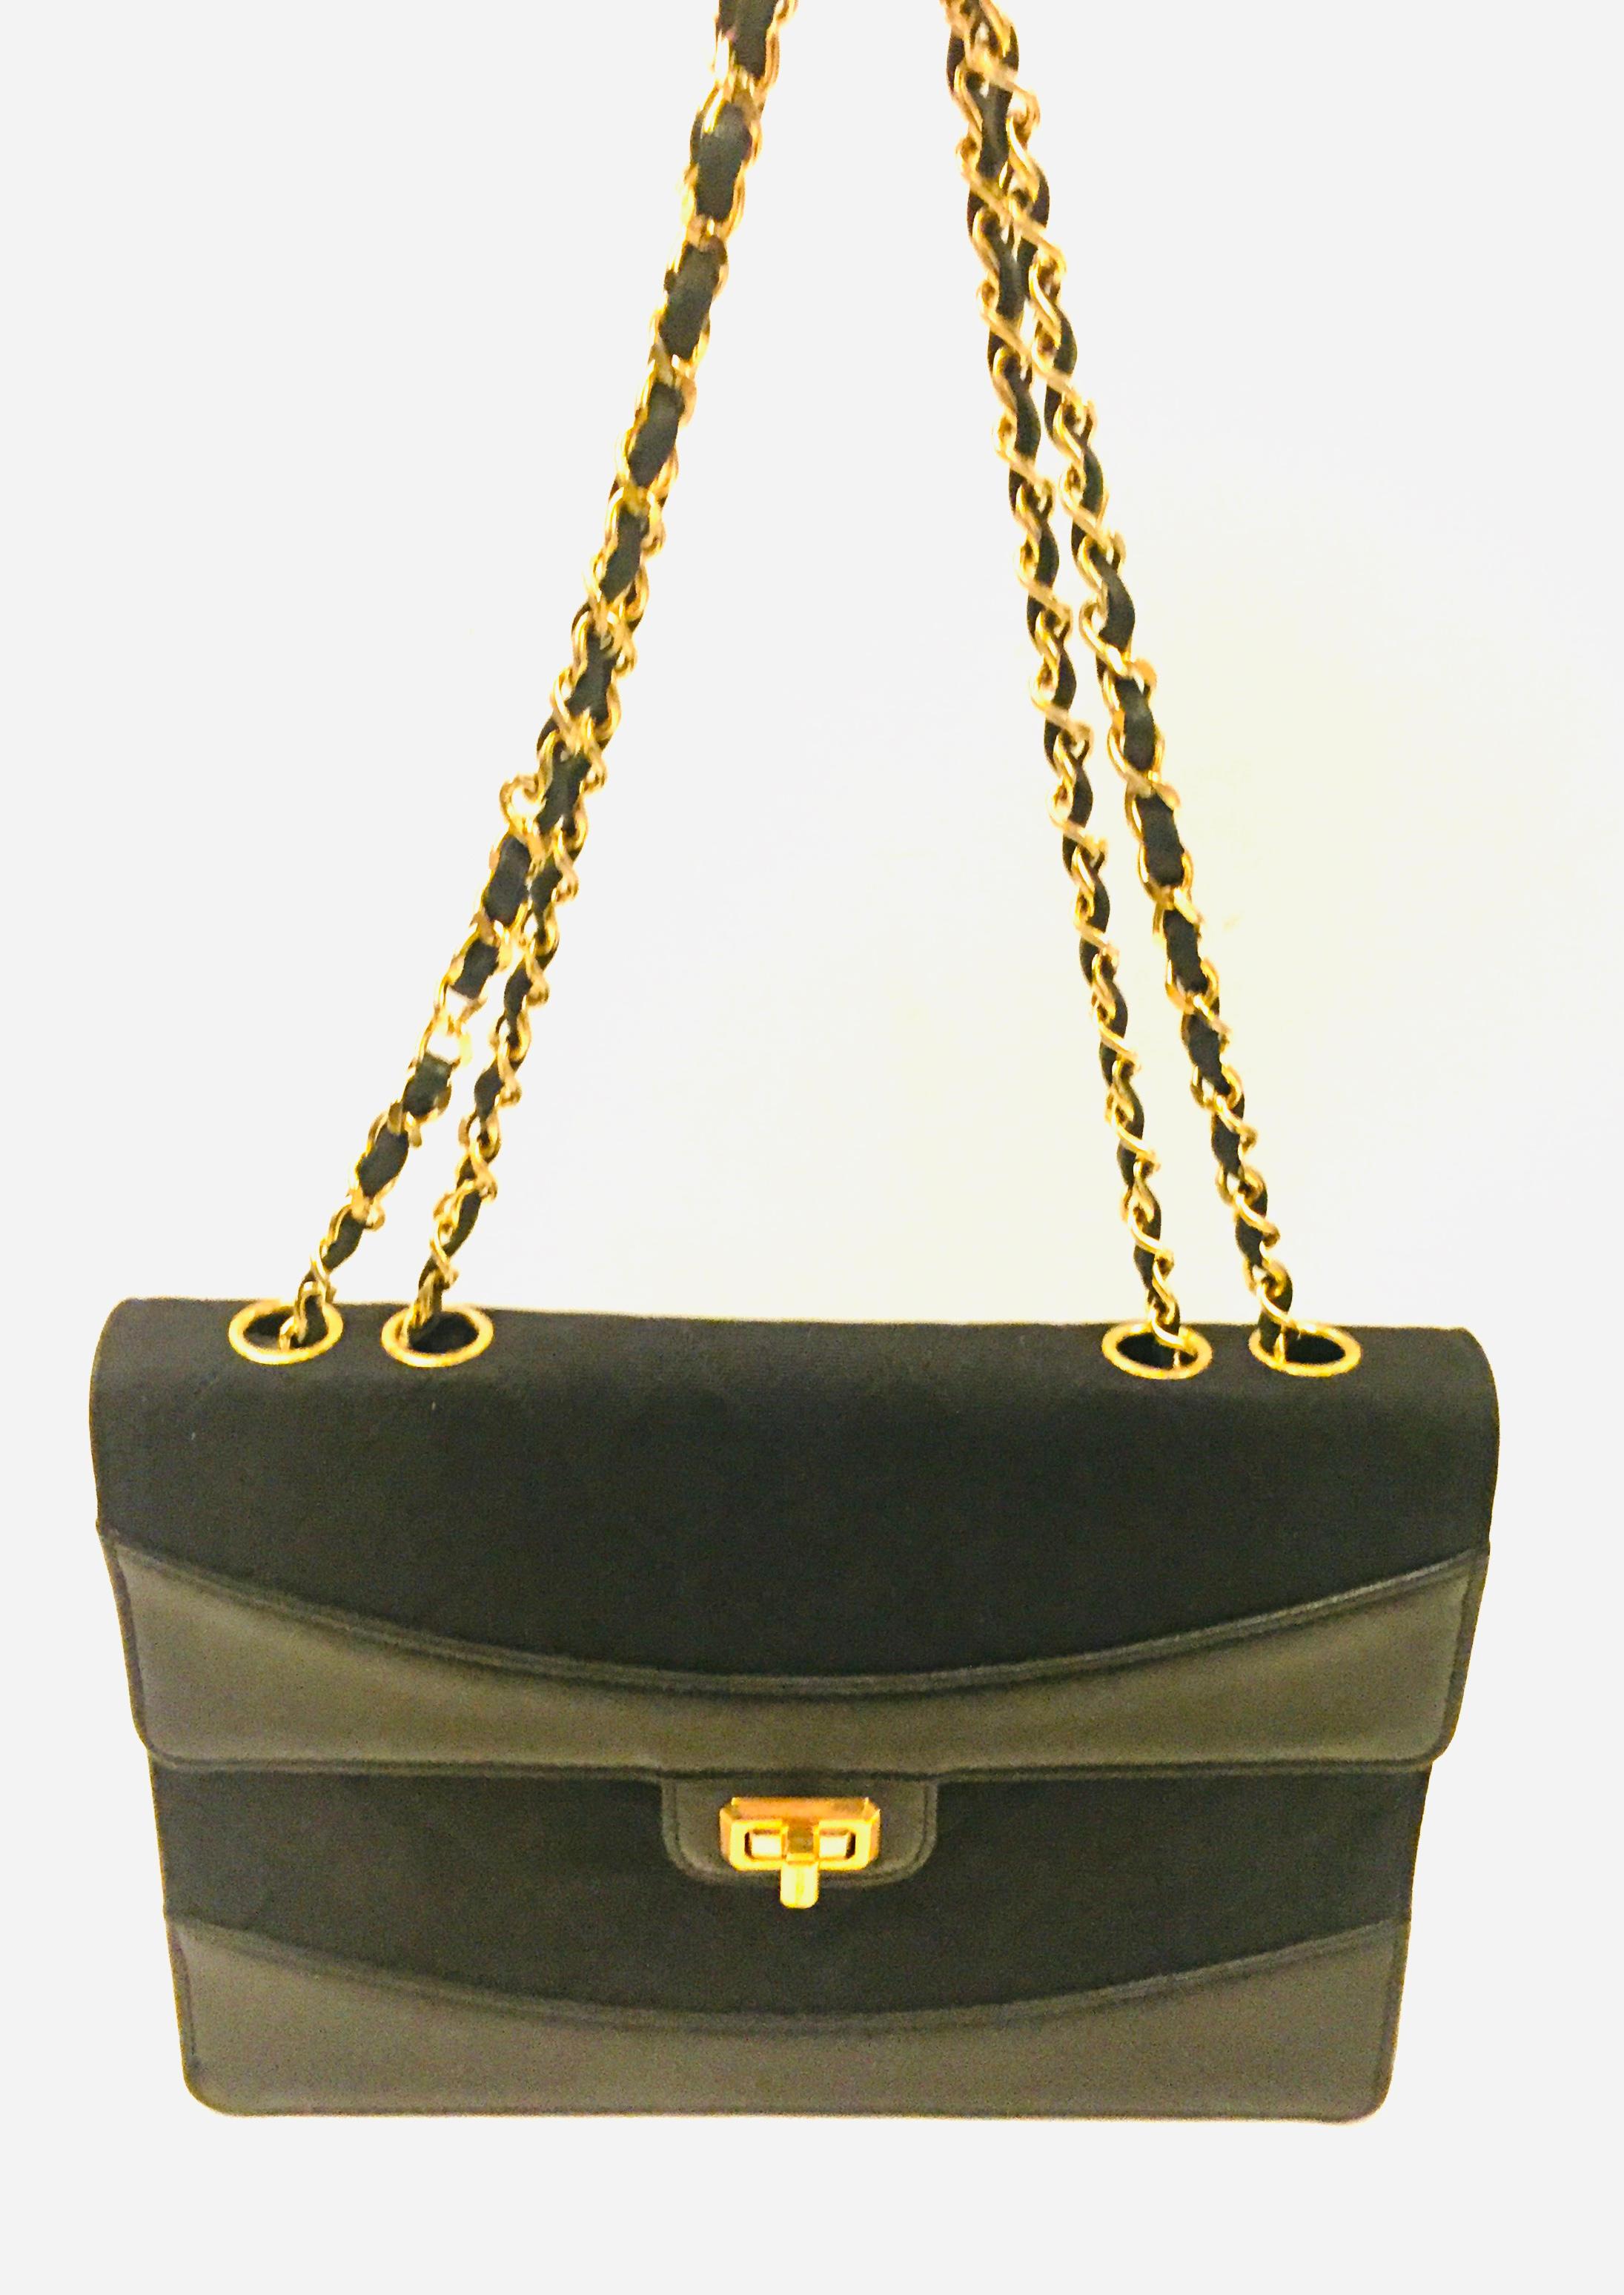 Chanel black canvas/leather shoulder bag  1